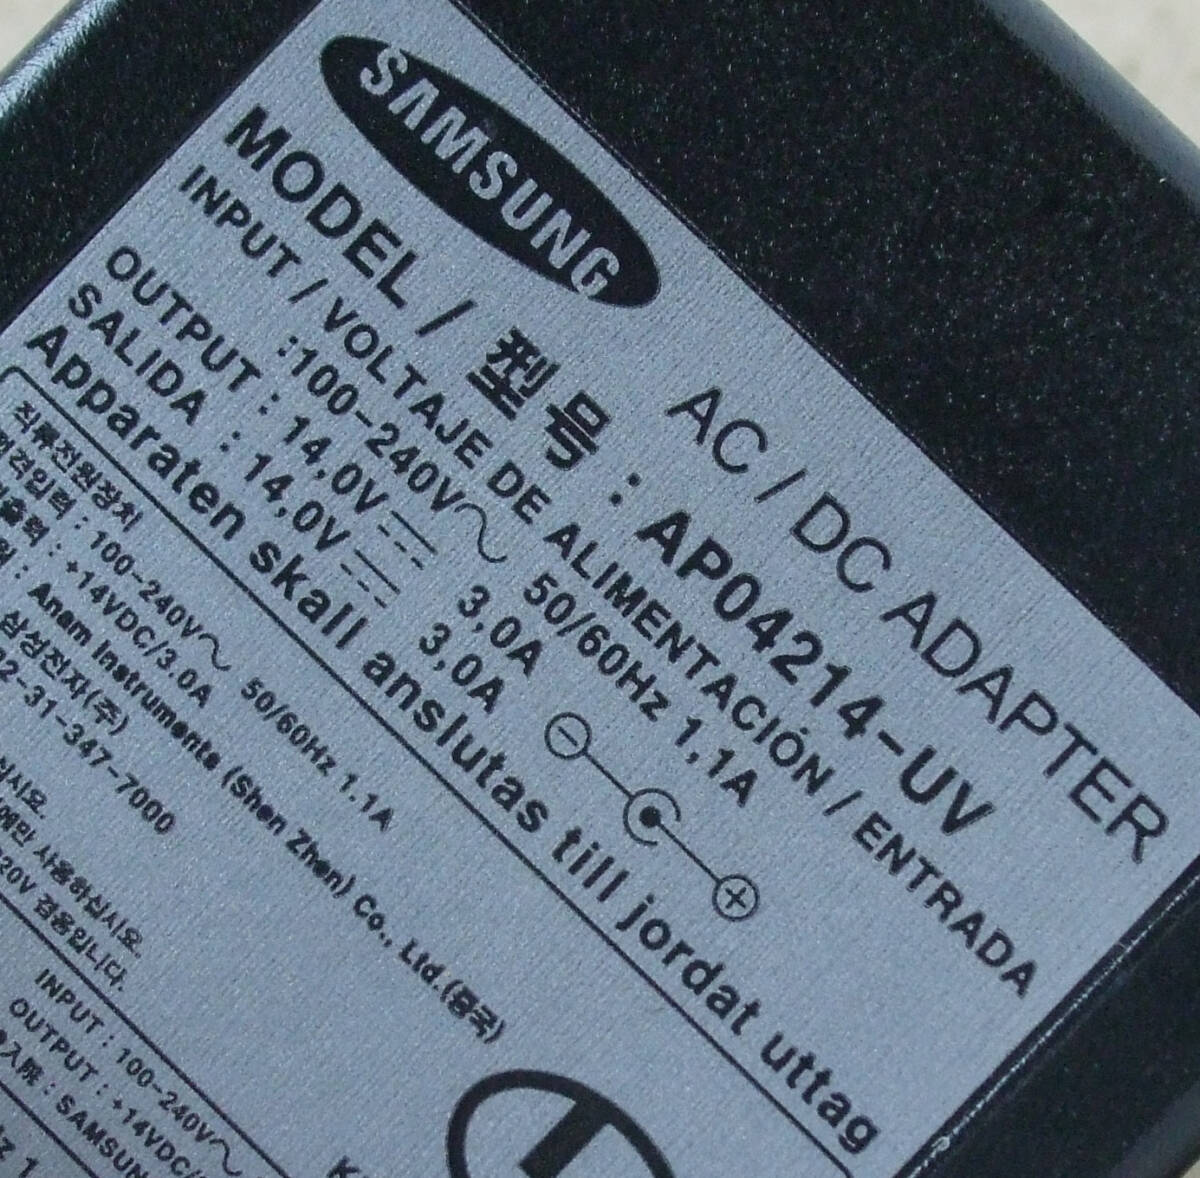  бесплатная доставка Samsung электронный SAMSUNG жидкокристаллический монитор жидкокристаллический дисплей оригинальный AC адаптор AP04214-UV центральный плюс 14V 14.0V 3A 3.0A EIAJ5